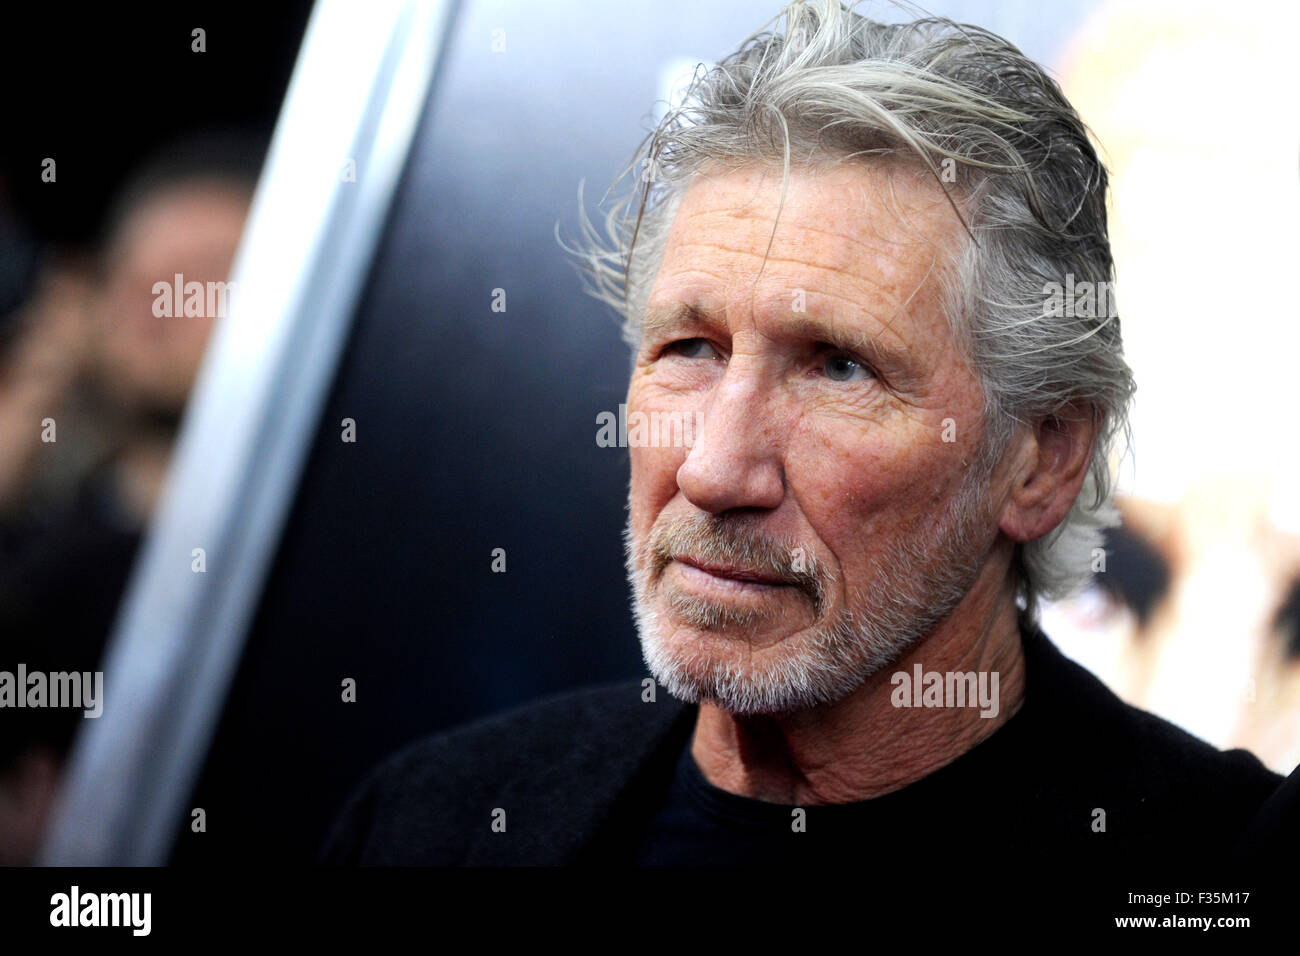 Roger Waters (Pink Floyd) alla premiere del film 'Roger Waters la parete' al Teatro Ziegfeld. New York, 28.09.2015/picture alliance Foto Stock